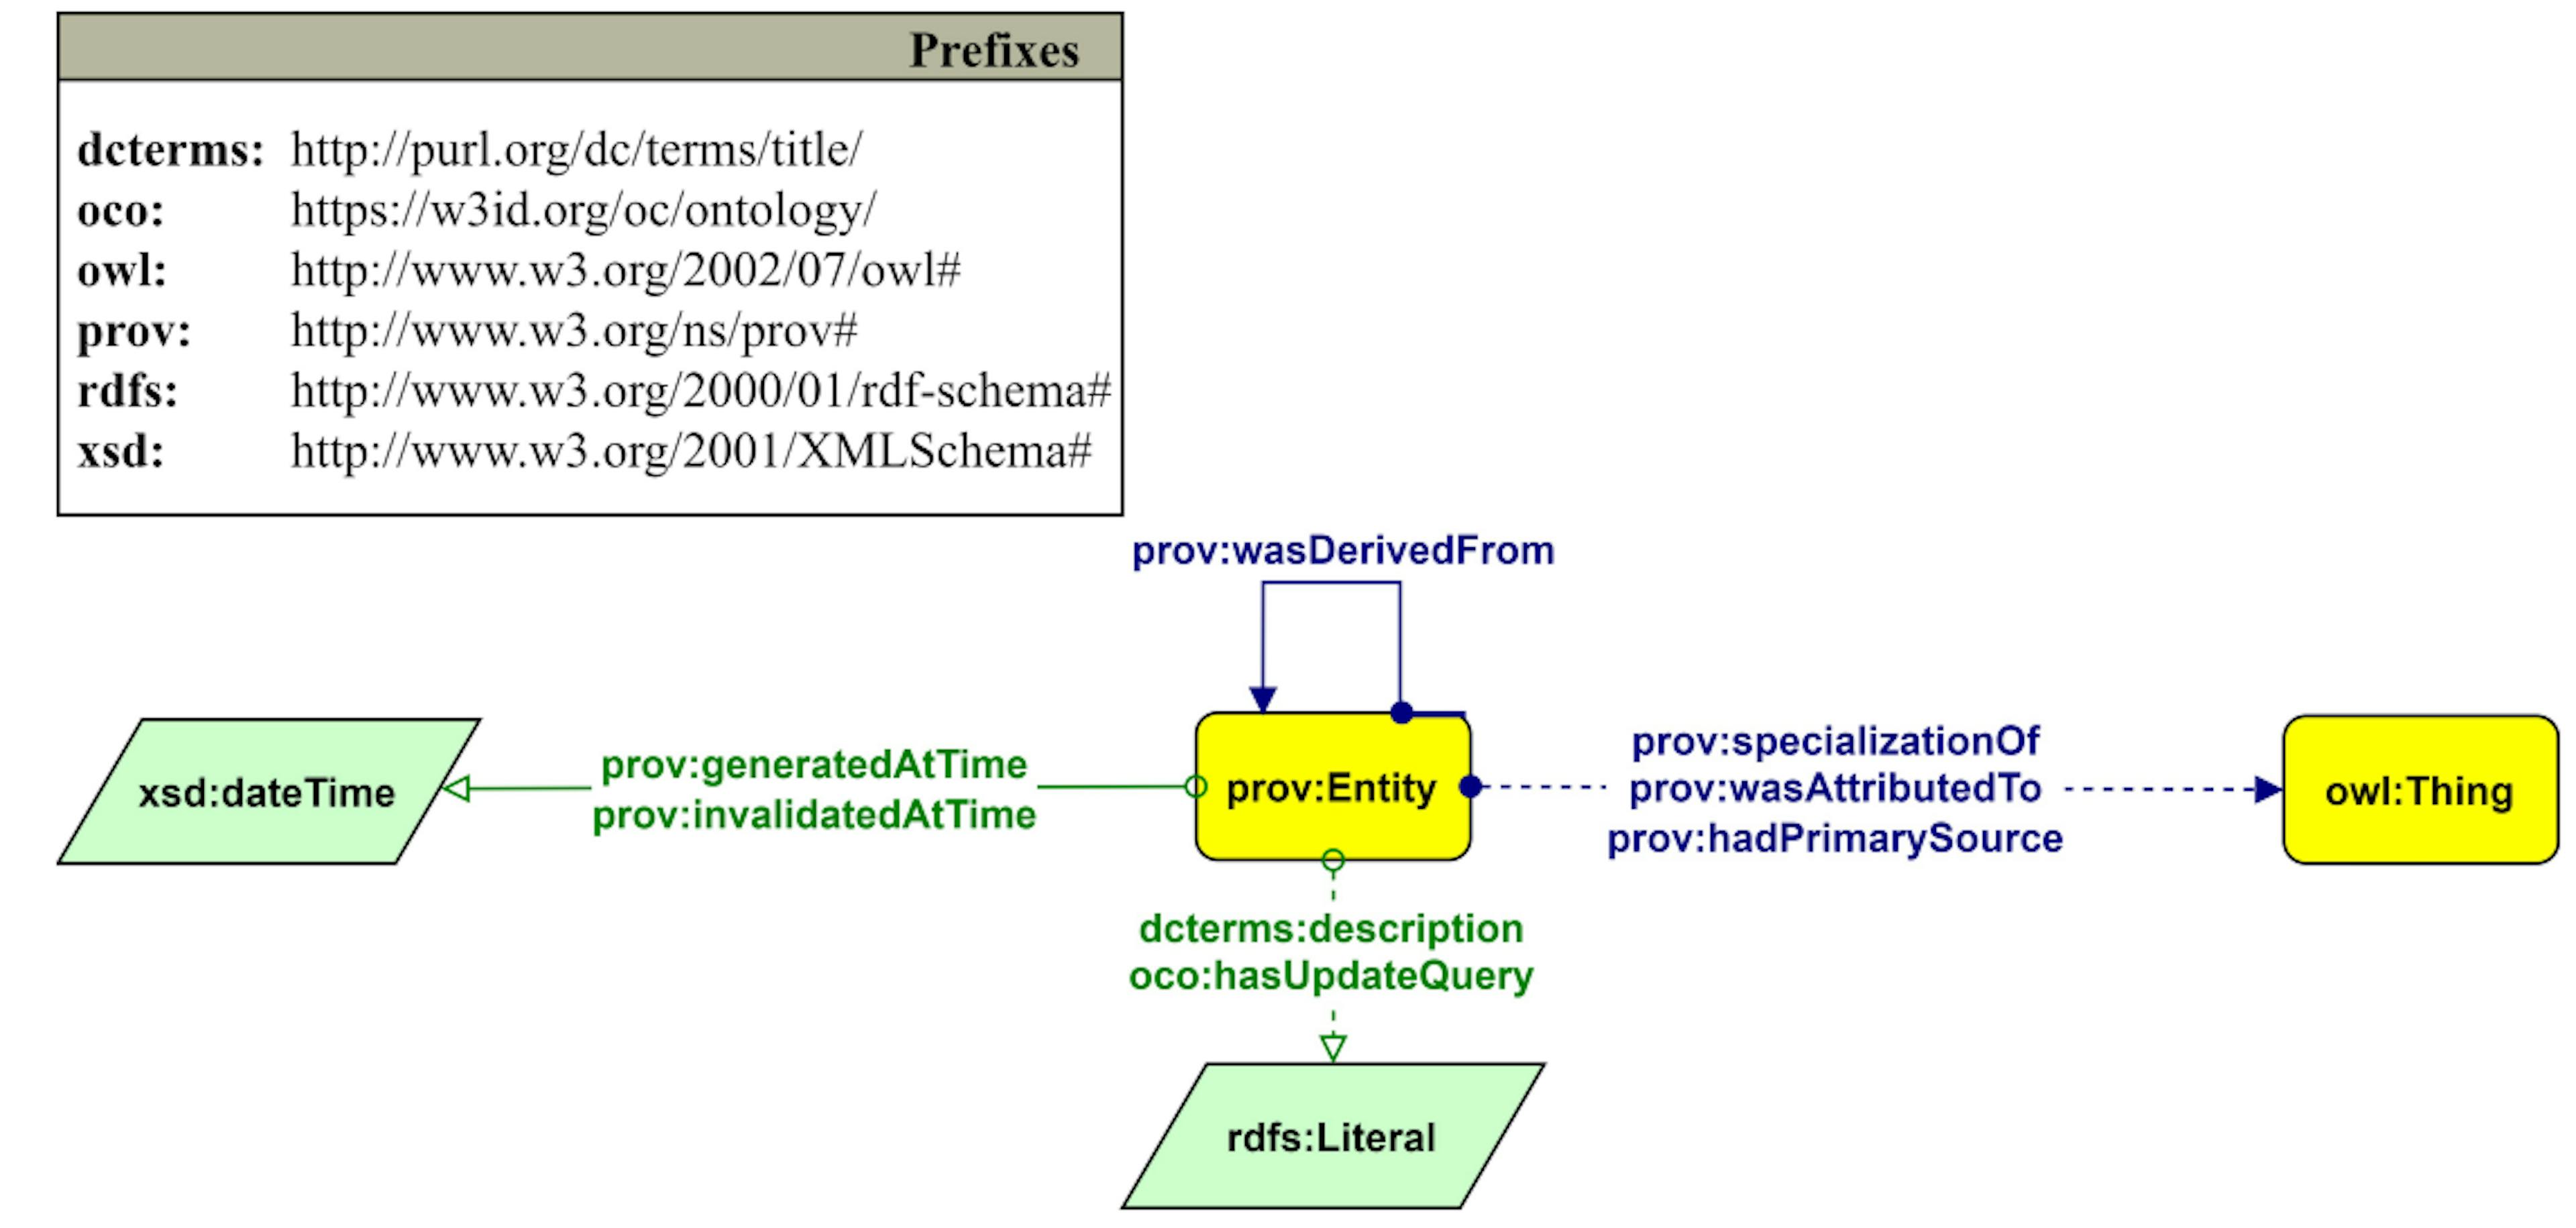 그림 7: 엔터티(prov:specializationOf를 통해 연결됨)의 스냅샷(prov:Entity)과 관련 출처 정보를 설명하는 Graffoo 다이어그램